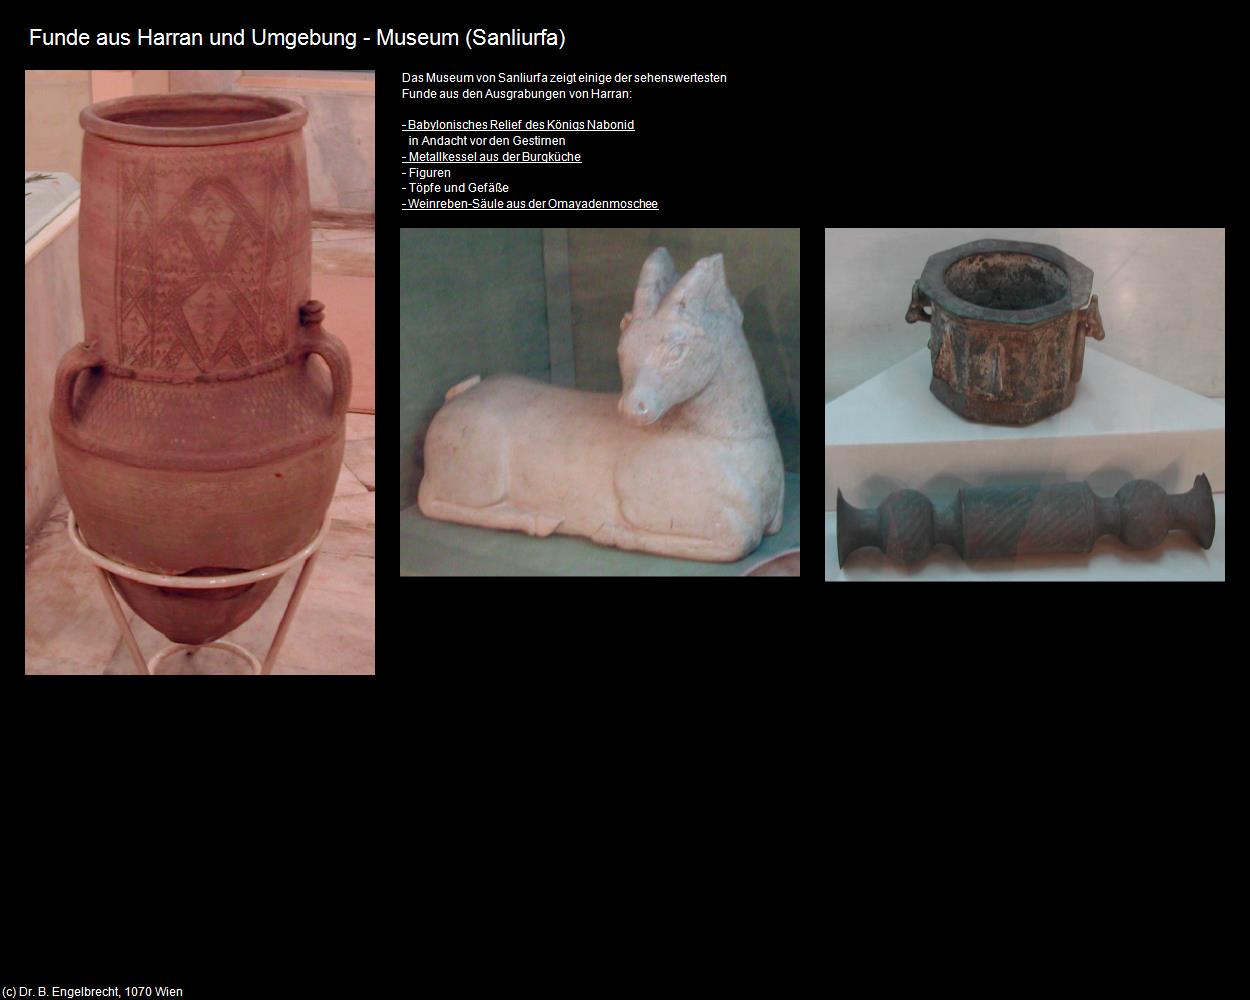 Funde aus Harran und Umgebung - Museum (Sanliurfa) in TÜRKEI(c)B.Engelbrecht